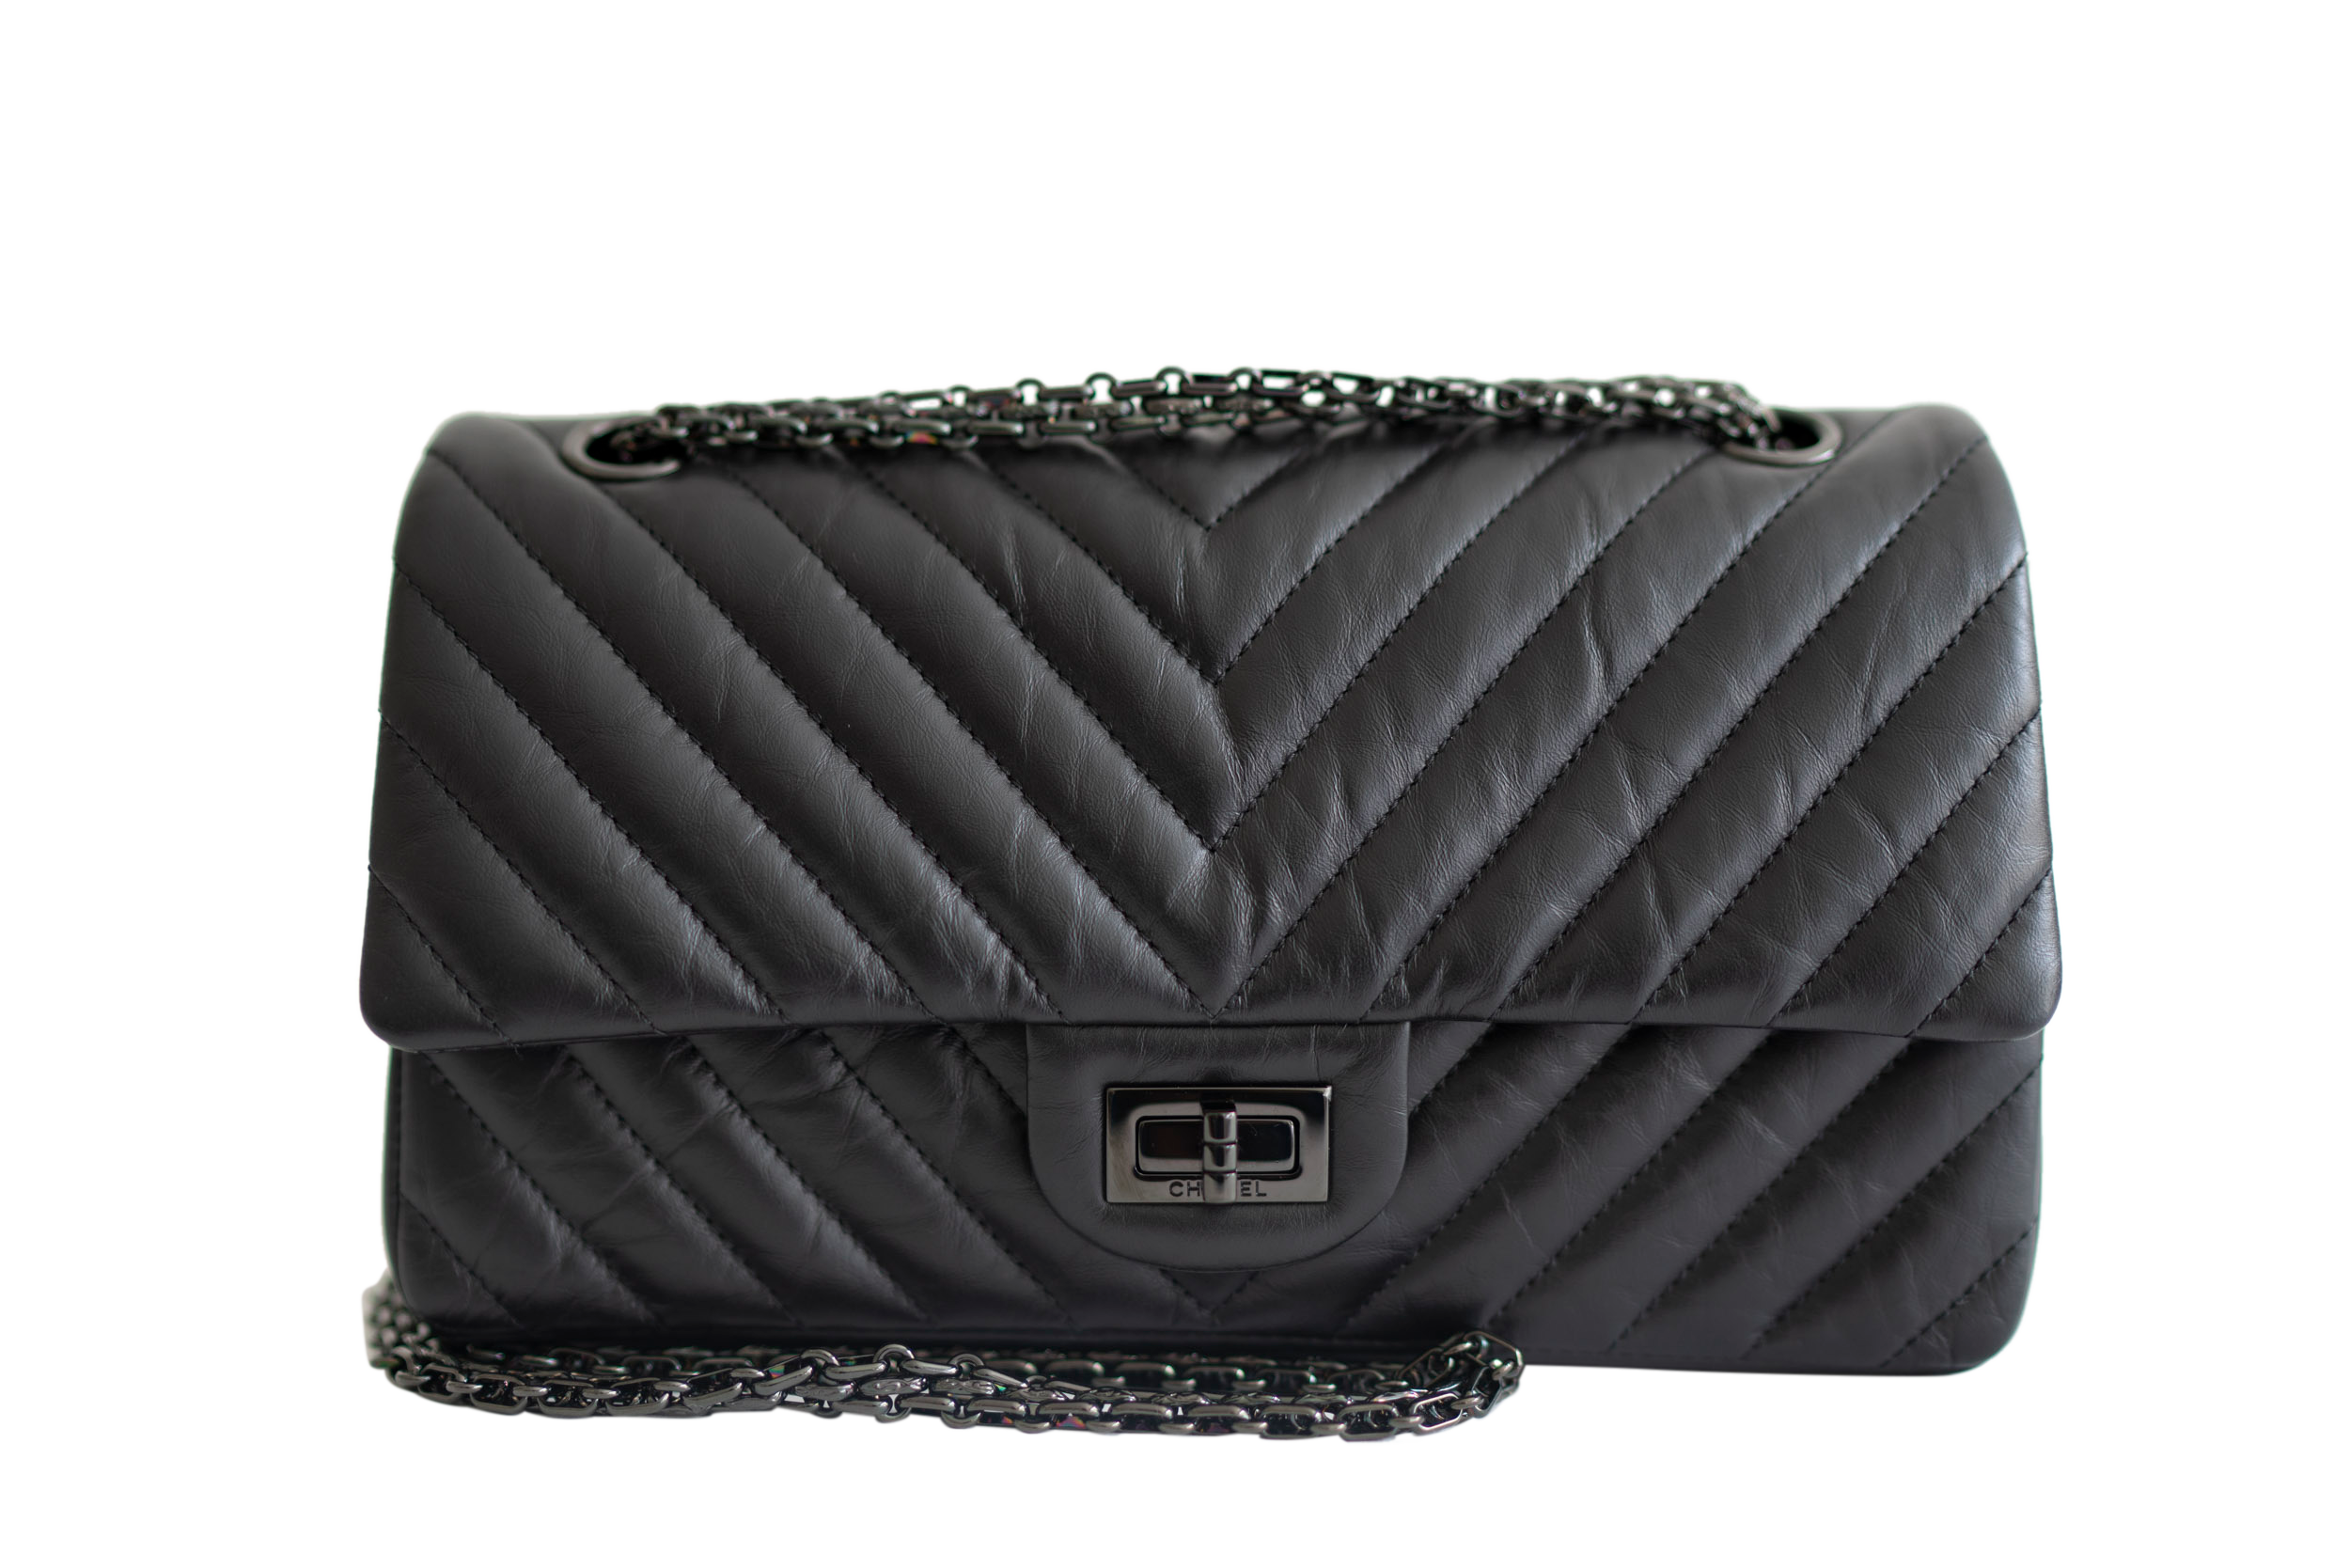 Chanel Bag Guide Phân biệt giữa túi Classic Flap 1112 và Reissue 255